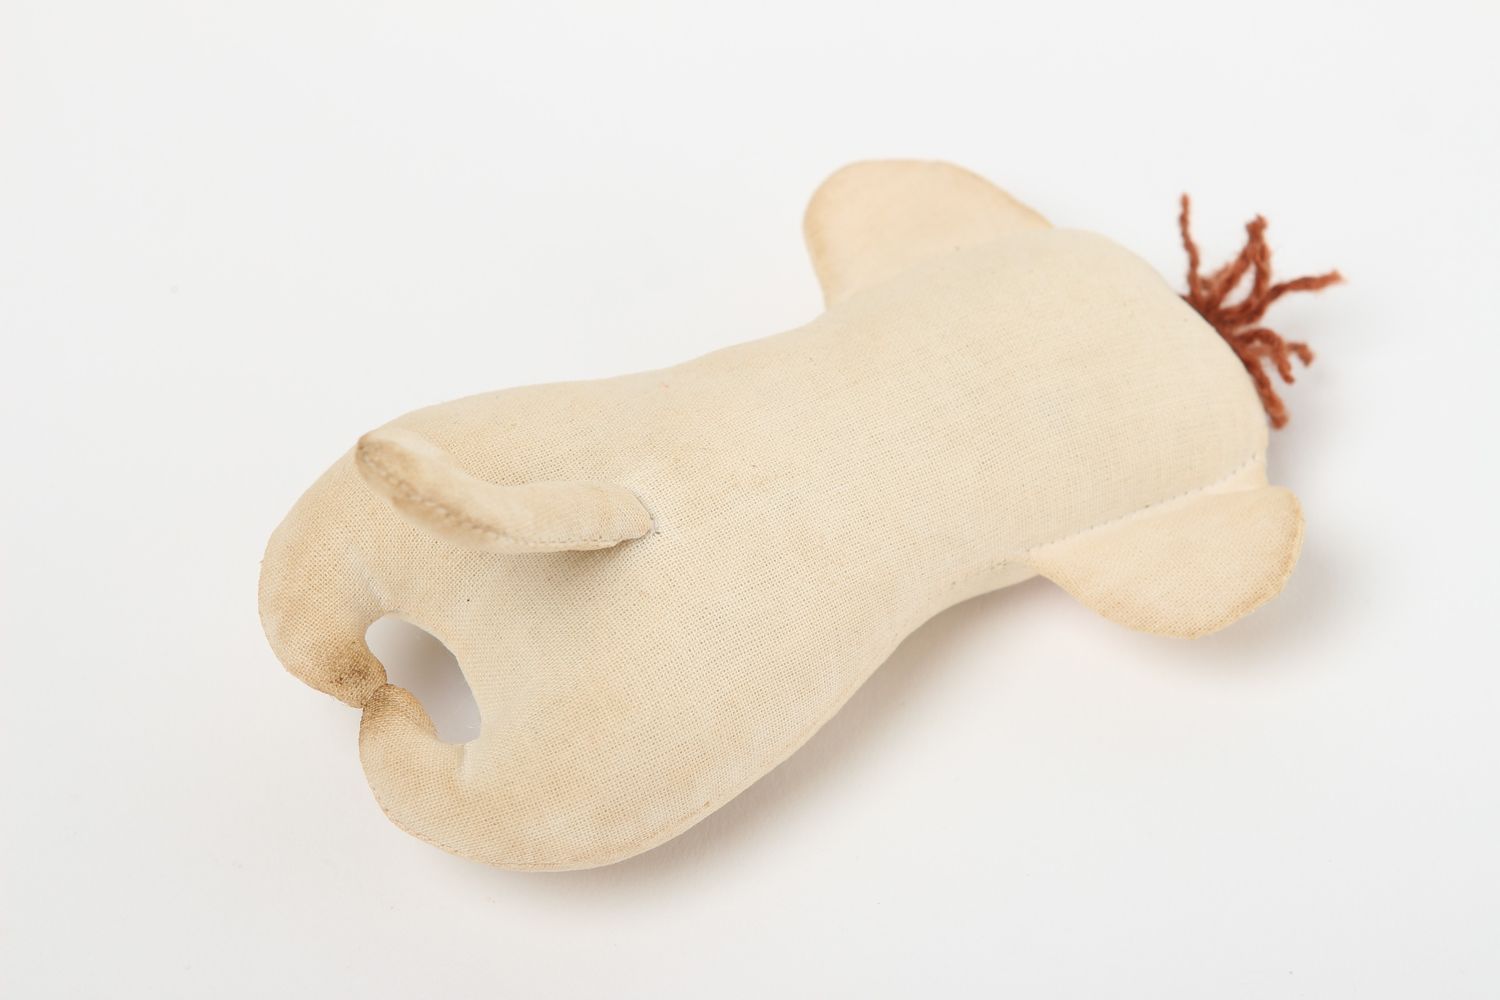 Текстильная игрушка обезьянка ручной работы мягкая игрушка декор для дома фото 4